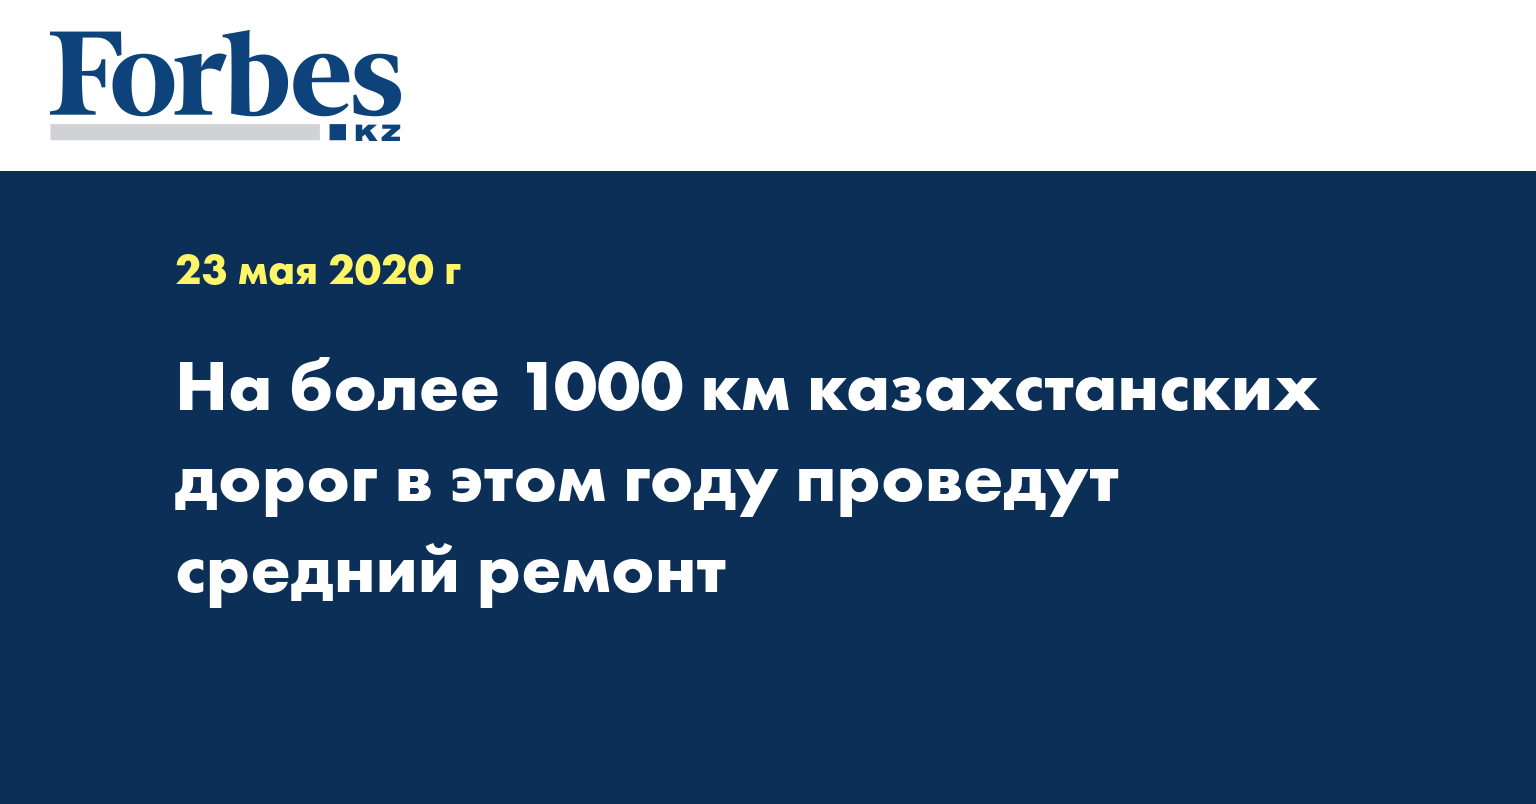 На более 1000 км казахстанских дорог в этом году проведут средний ремонт 